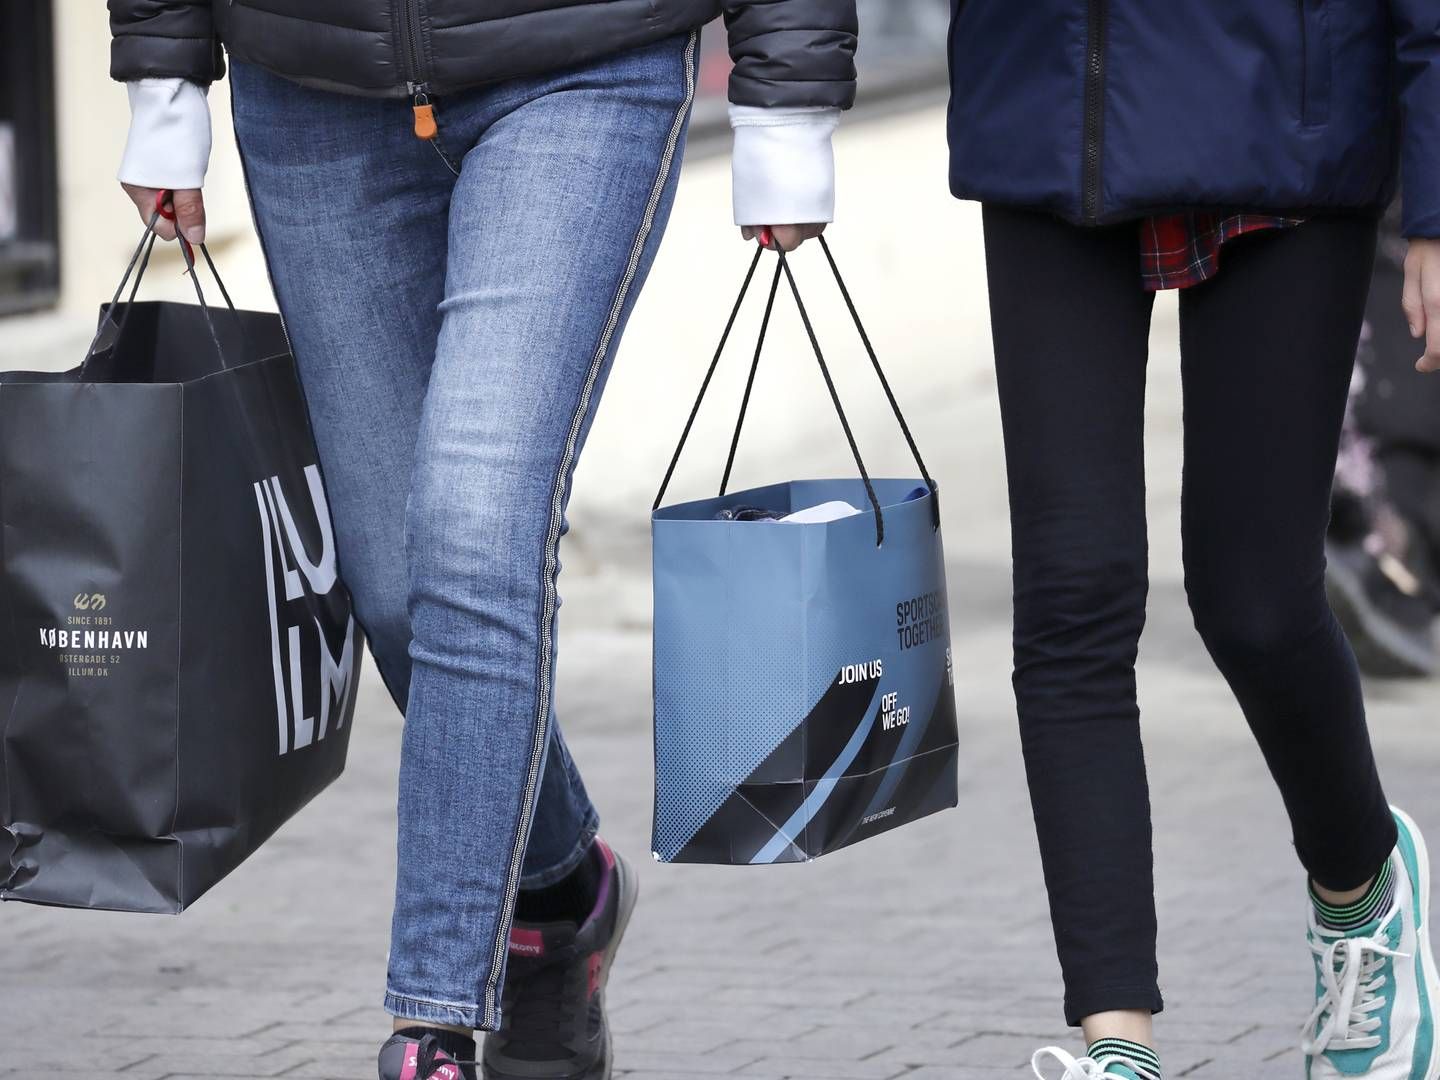 Forbrugertilliden fortsætter med at styrtdykke, og det kan gå ud over detailbranchen. | Foto: Jens Dresling